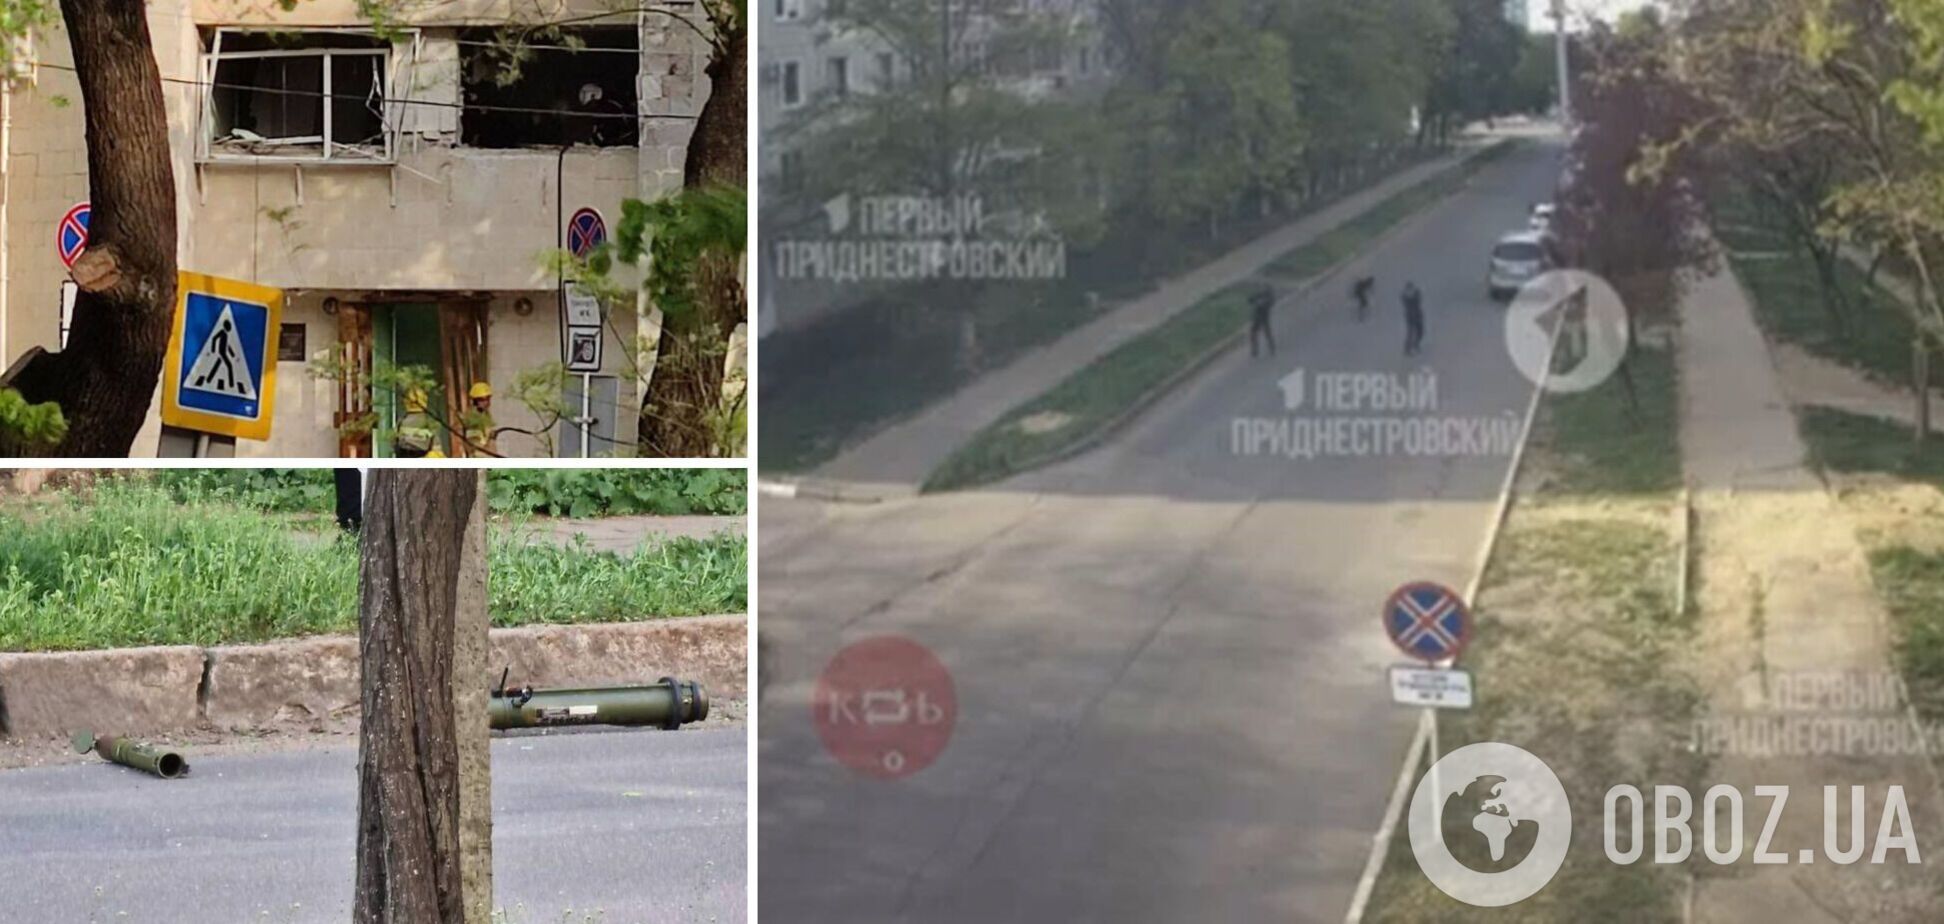 З'явилися кадри 'нападу' на будівлю 'МДБ' у Тирасполі. Відео